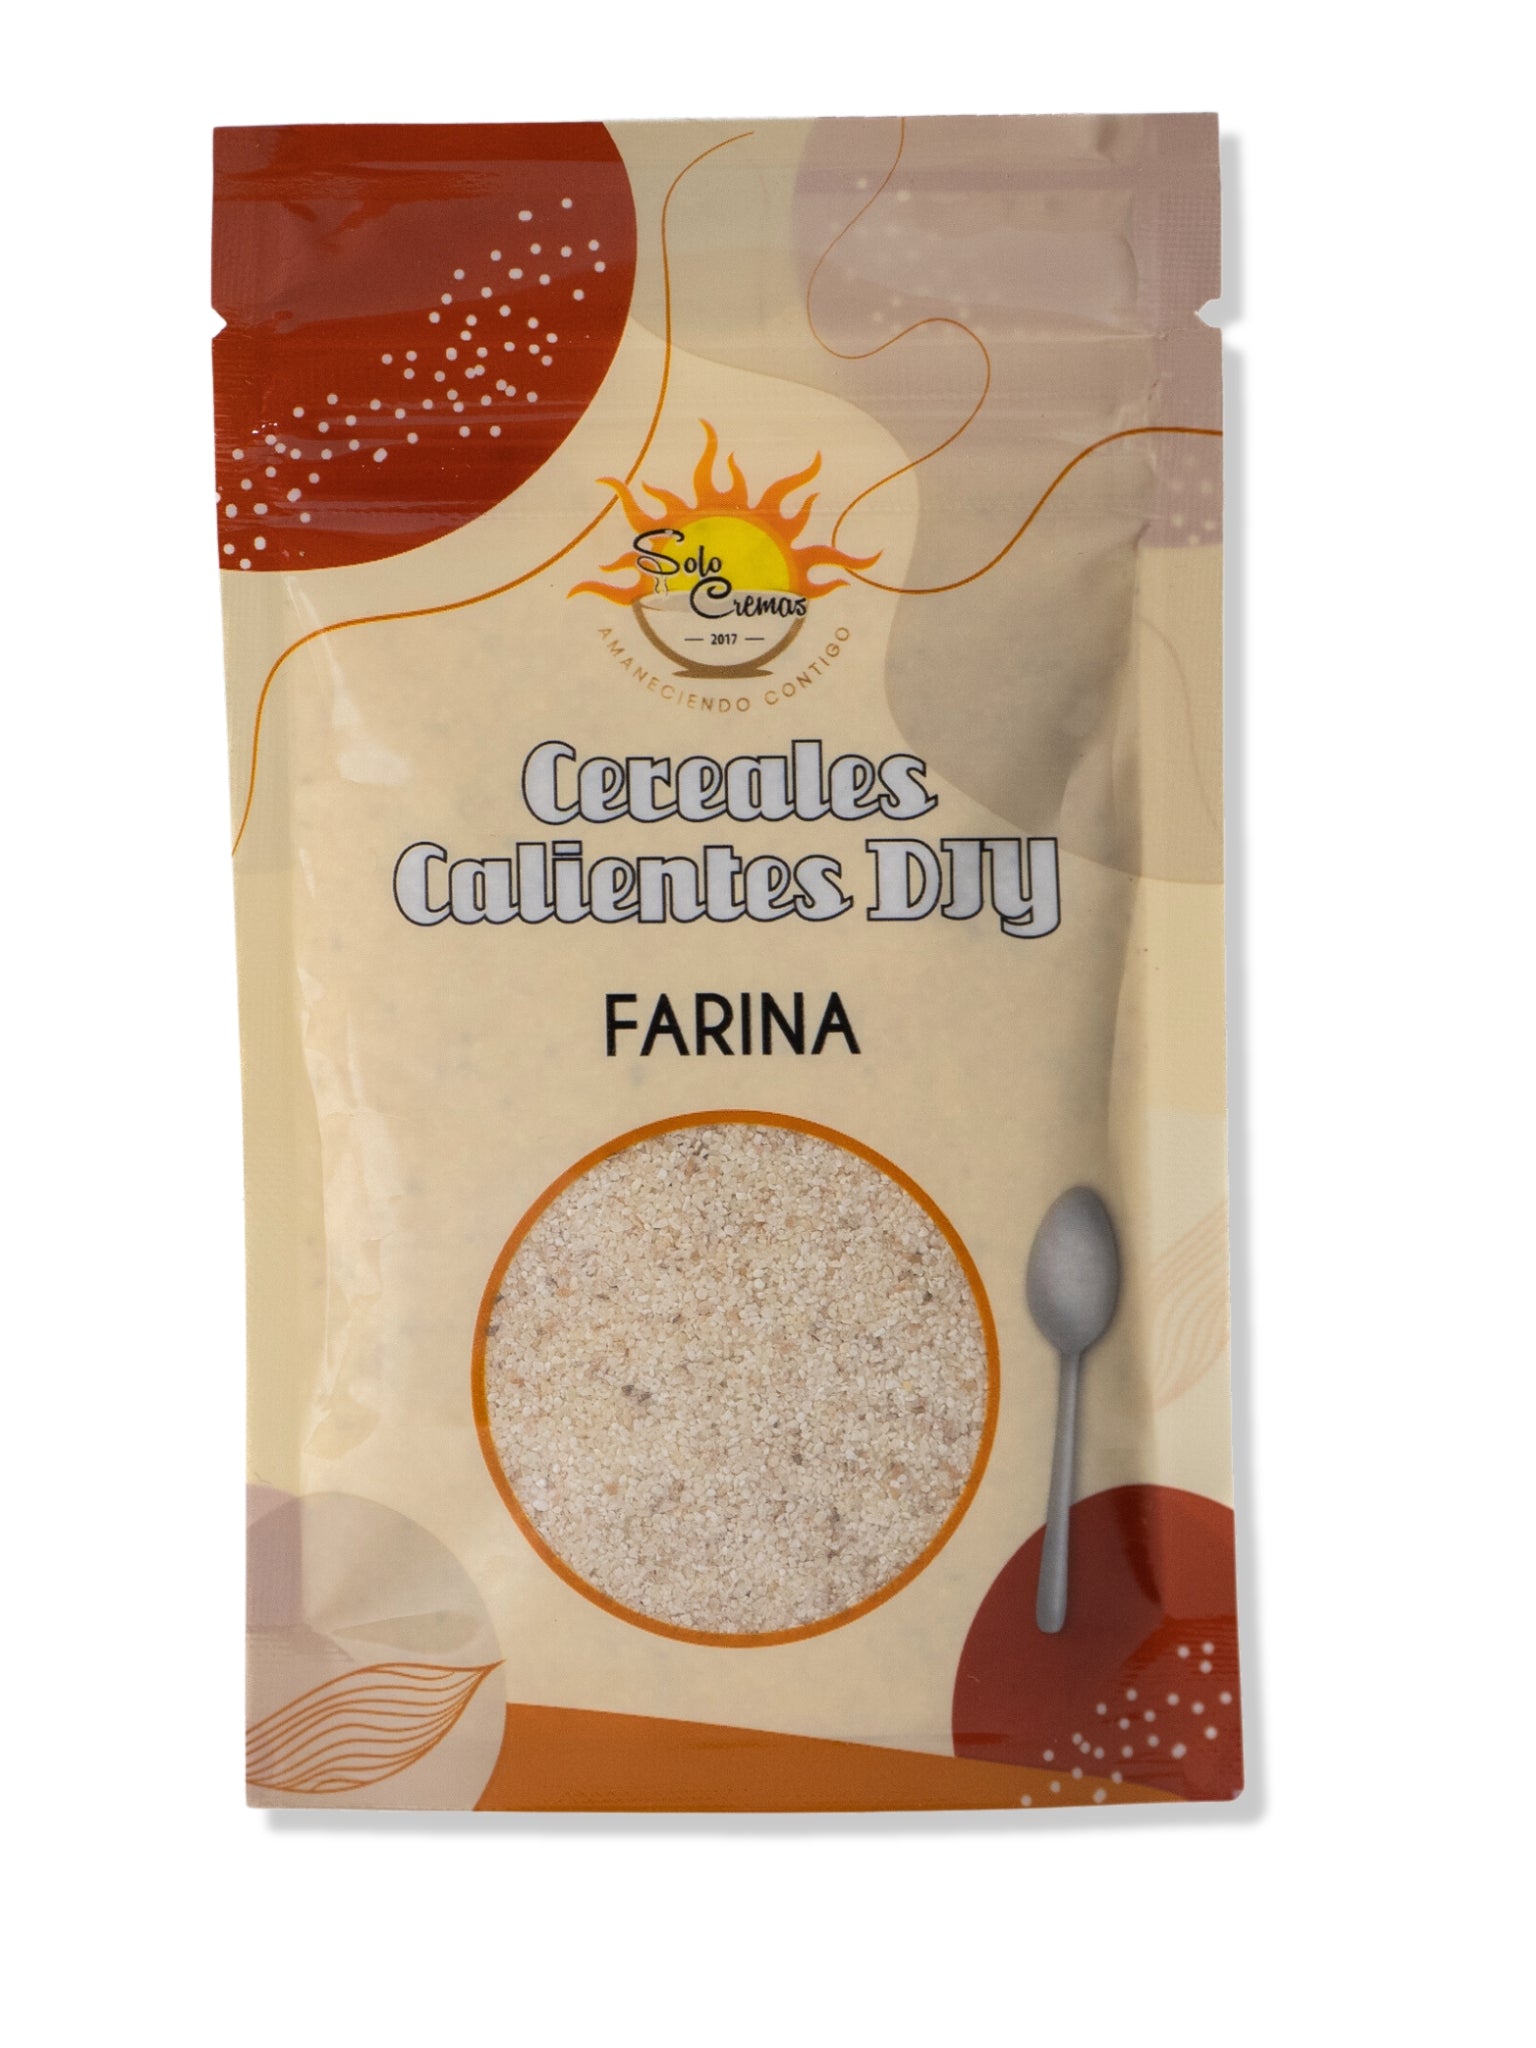 Farina de Solo Cremas - Cereales Calientes DIY